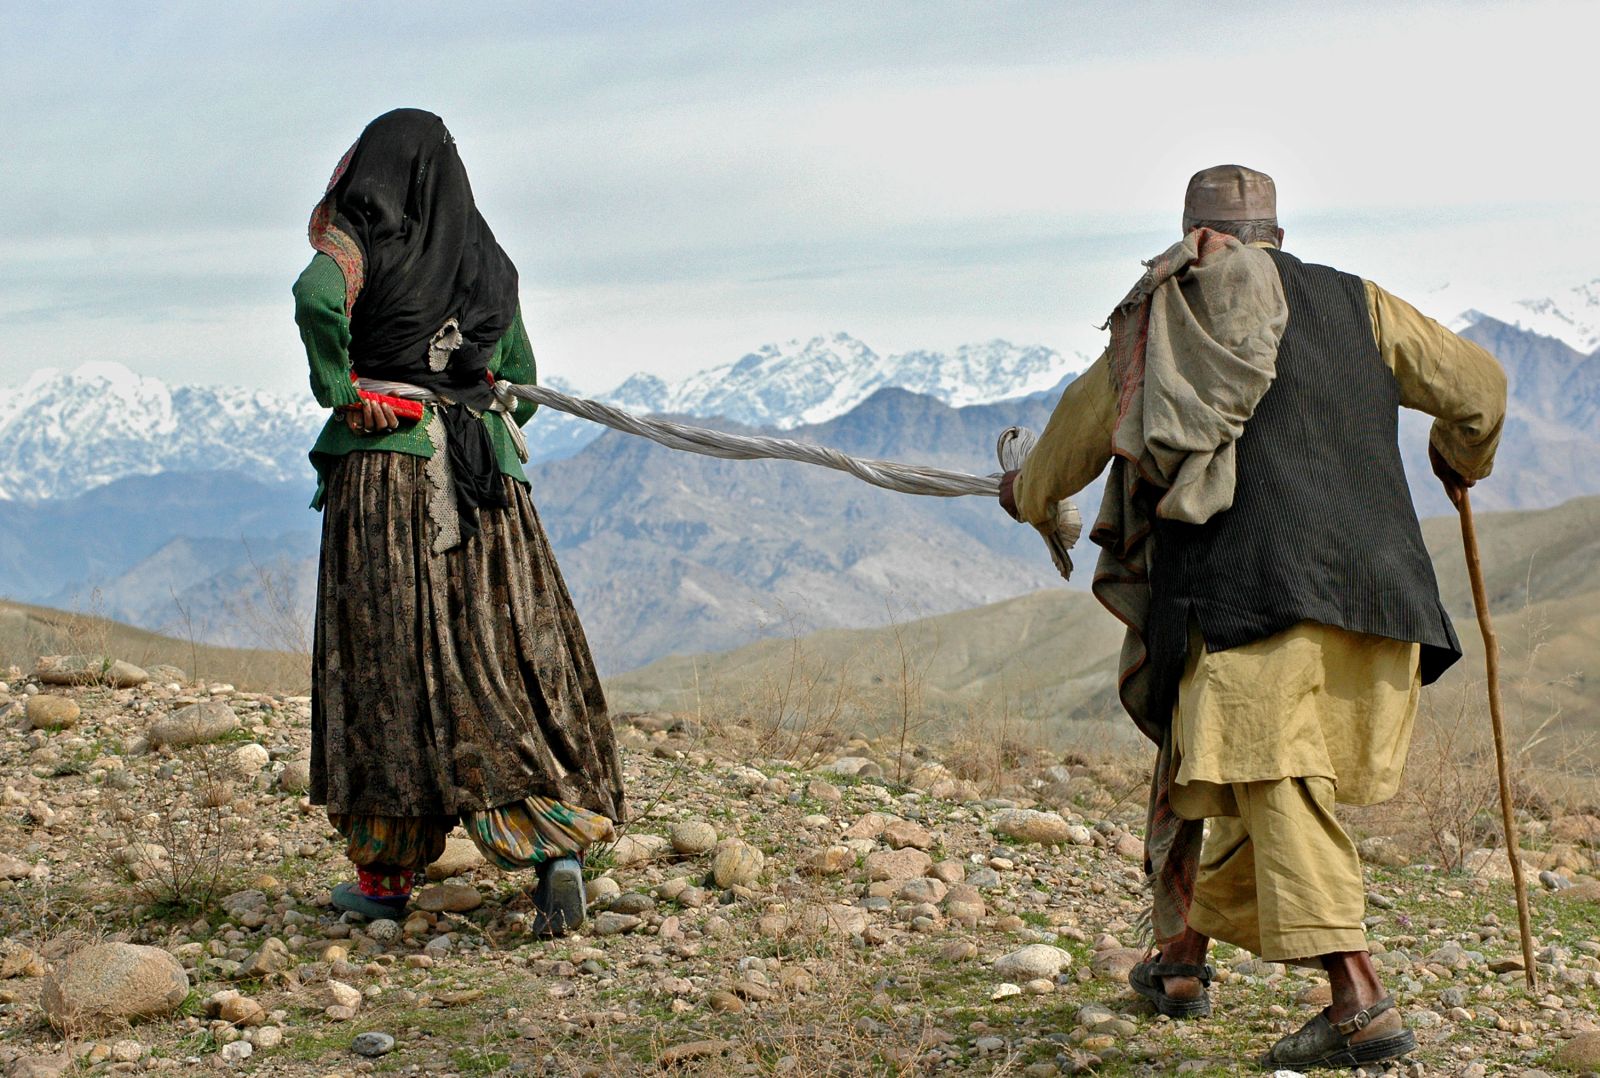 Афганский Танец Пат Секс